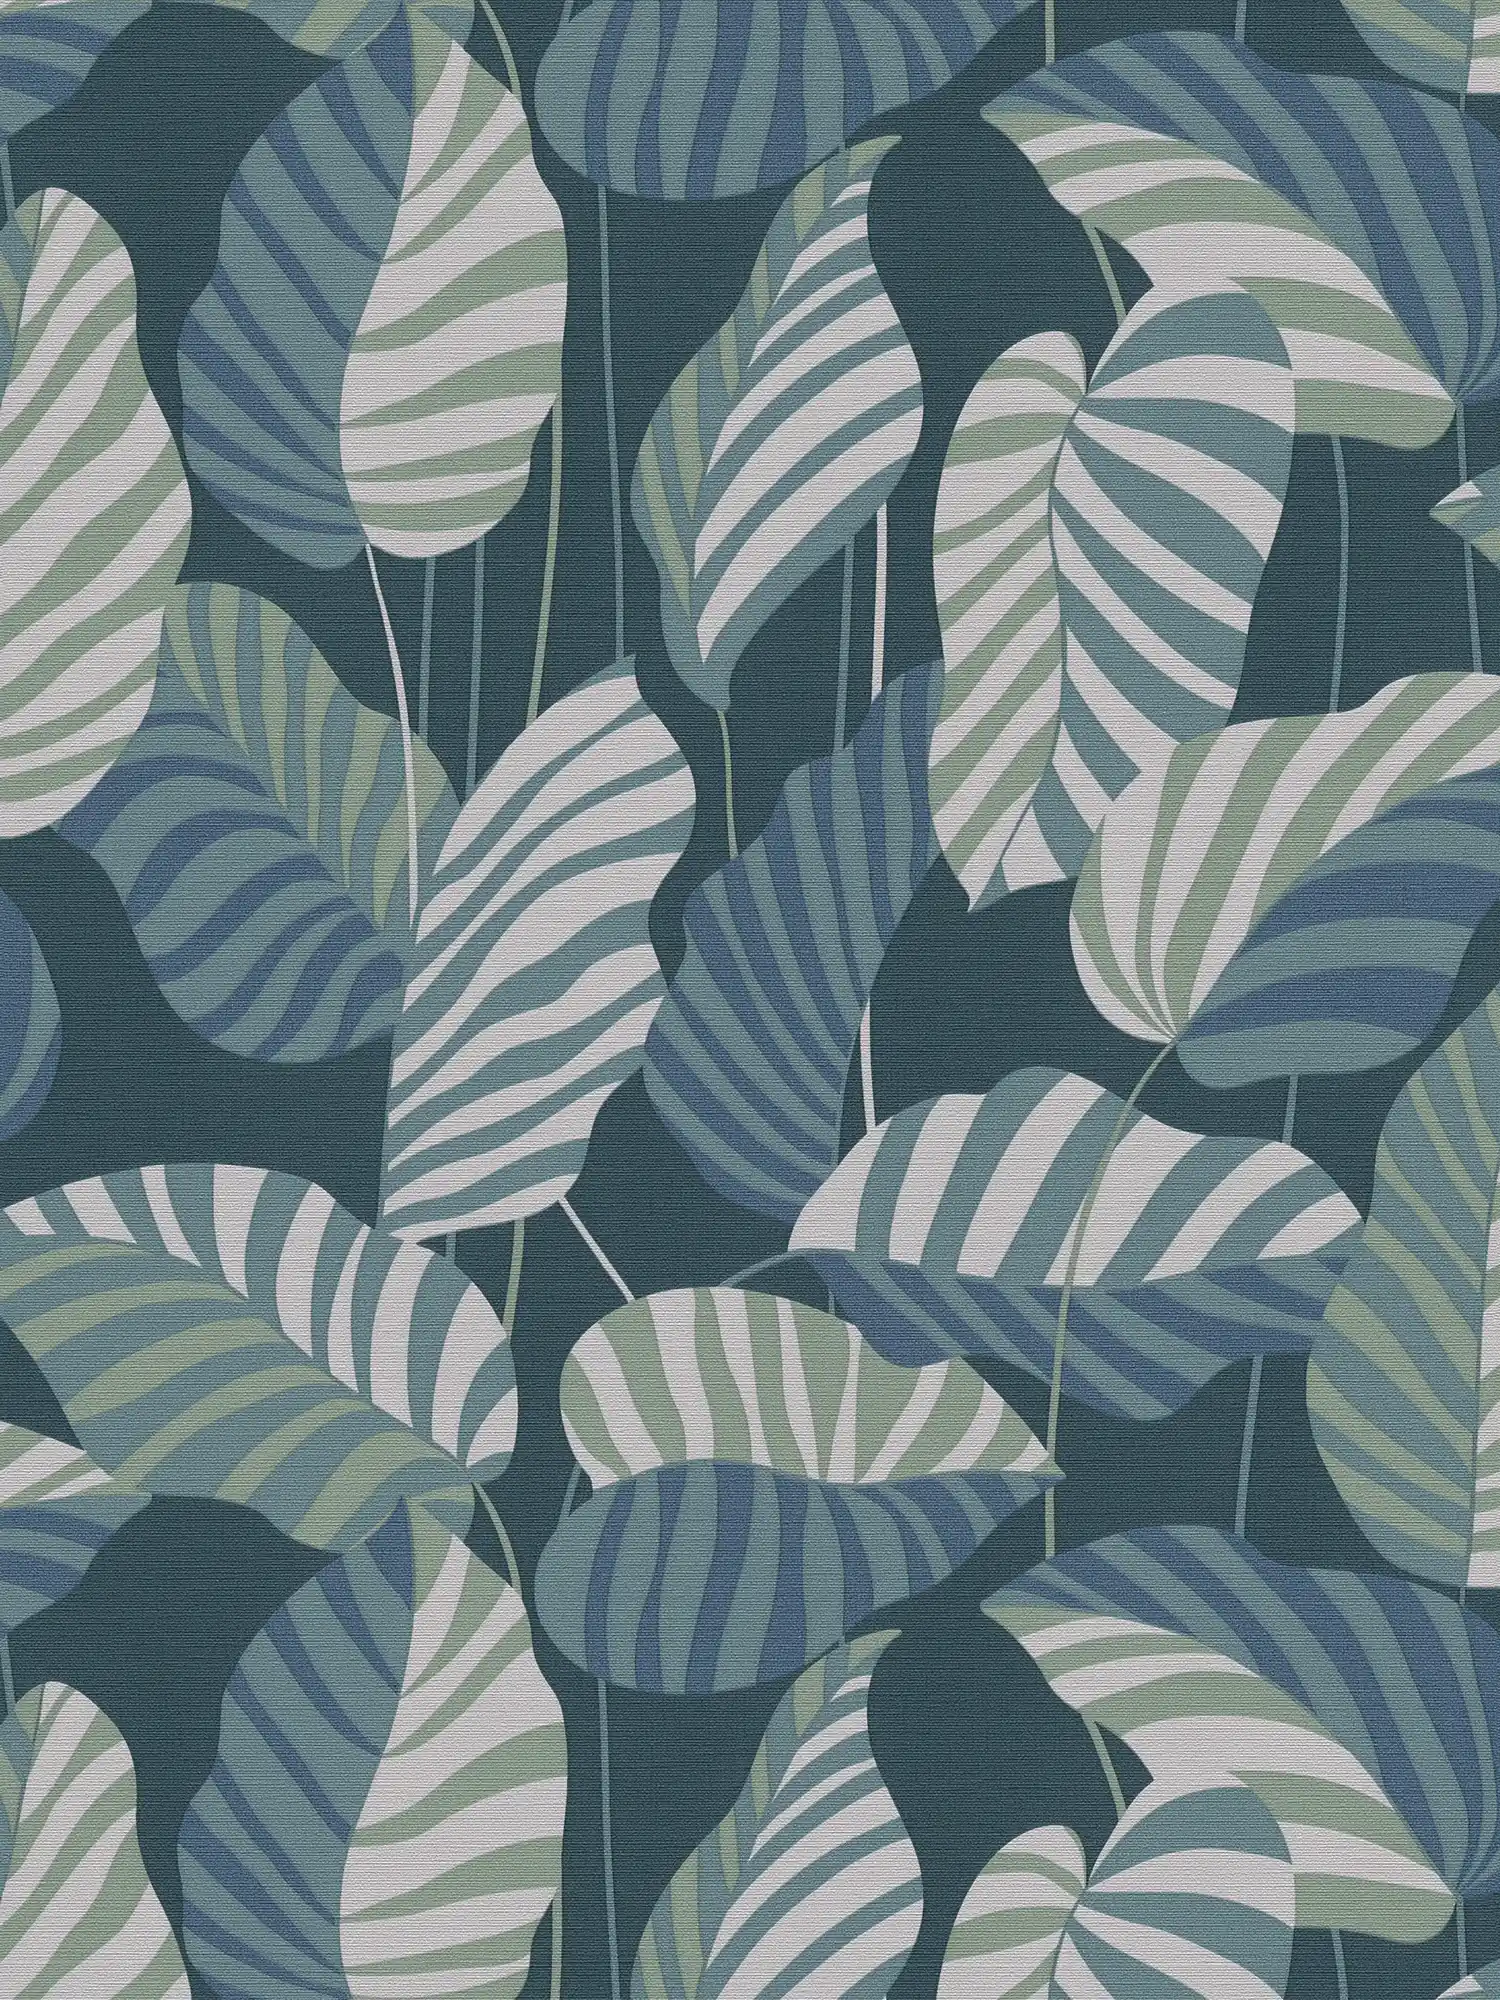 Vliestapete in Dschungelstil mit Blättern – Blau, Grün, Weiß
